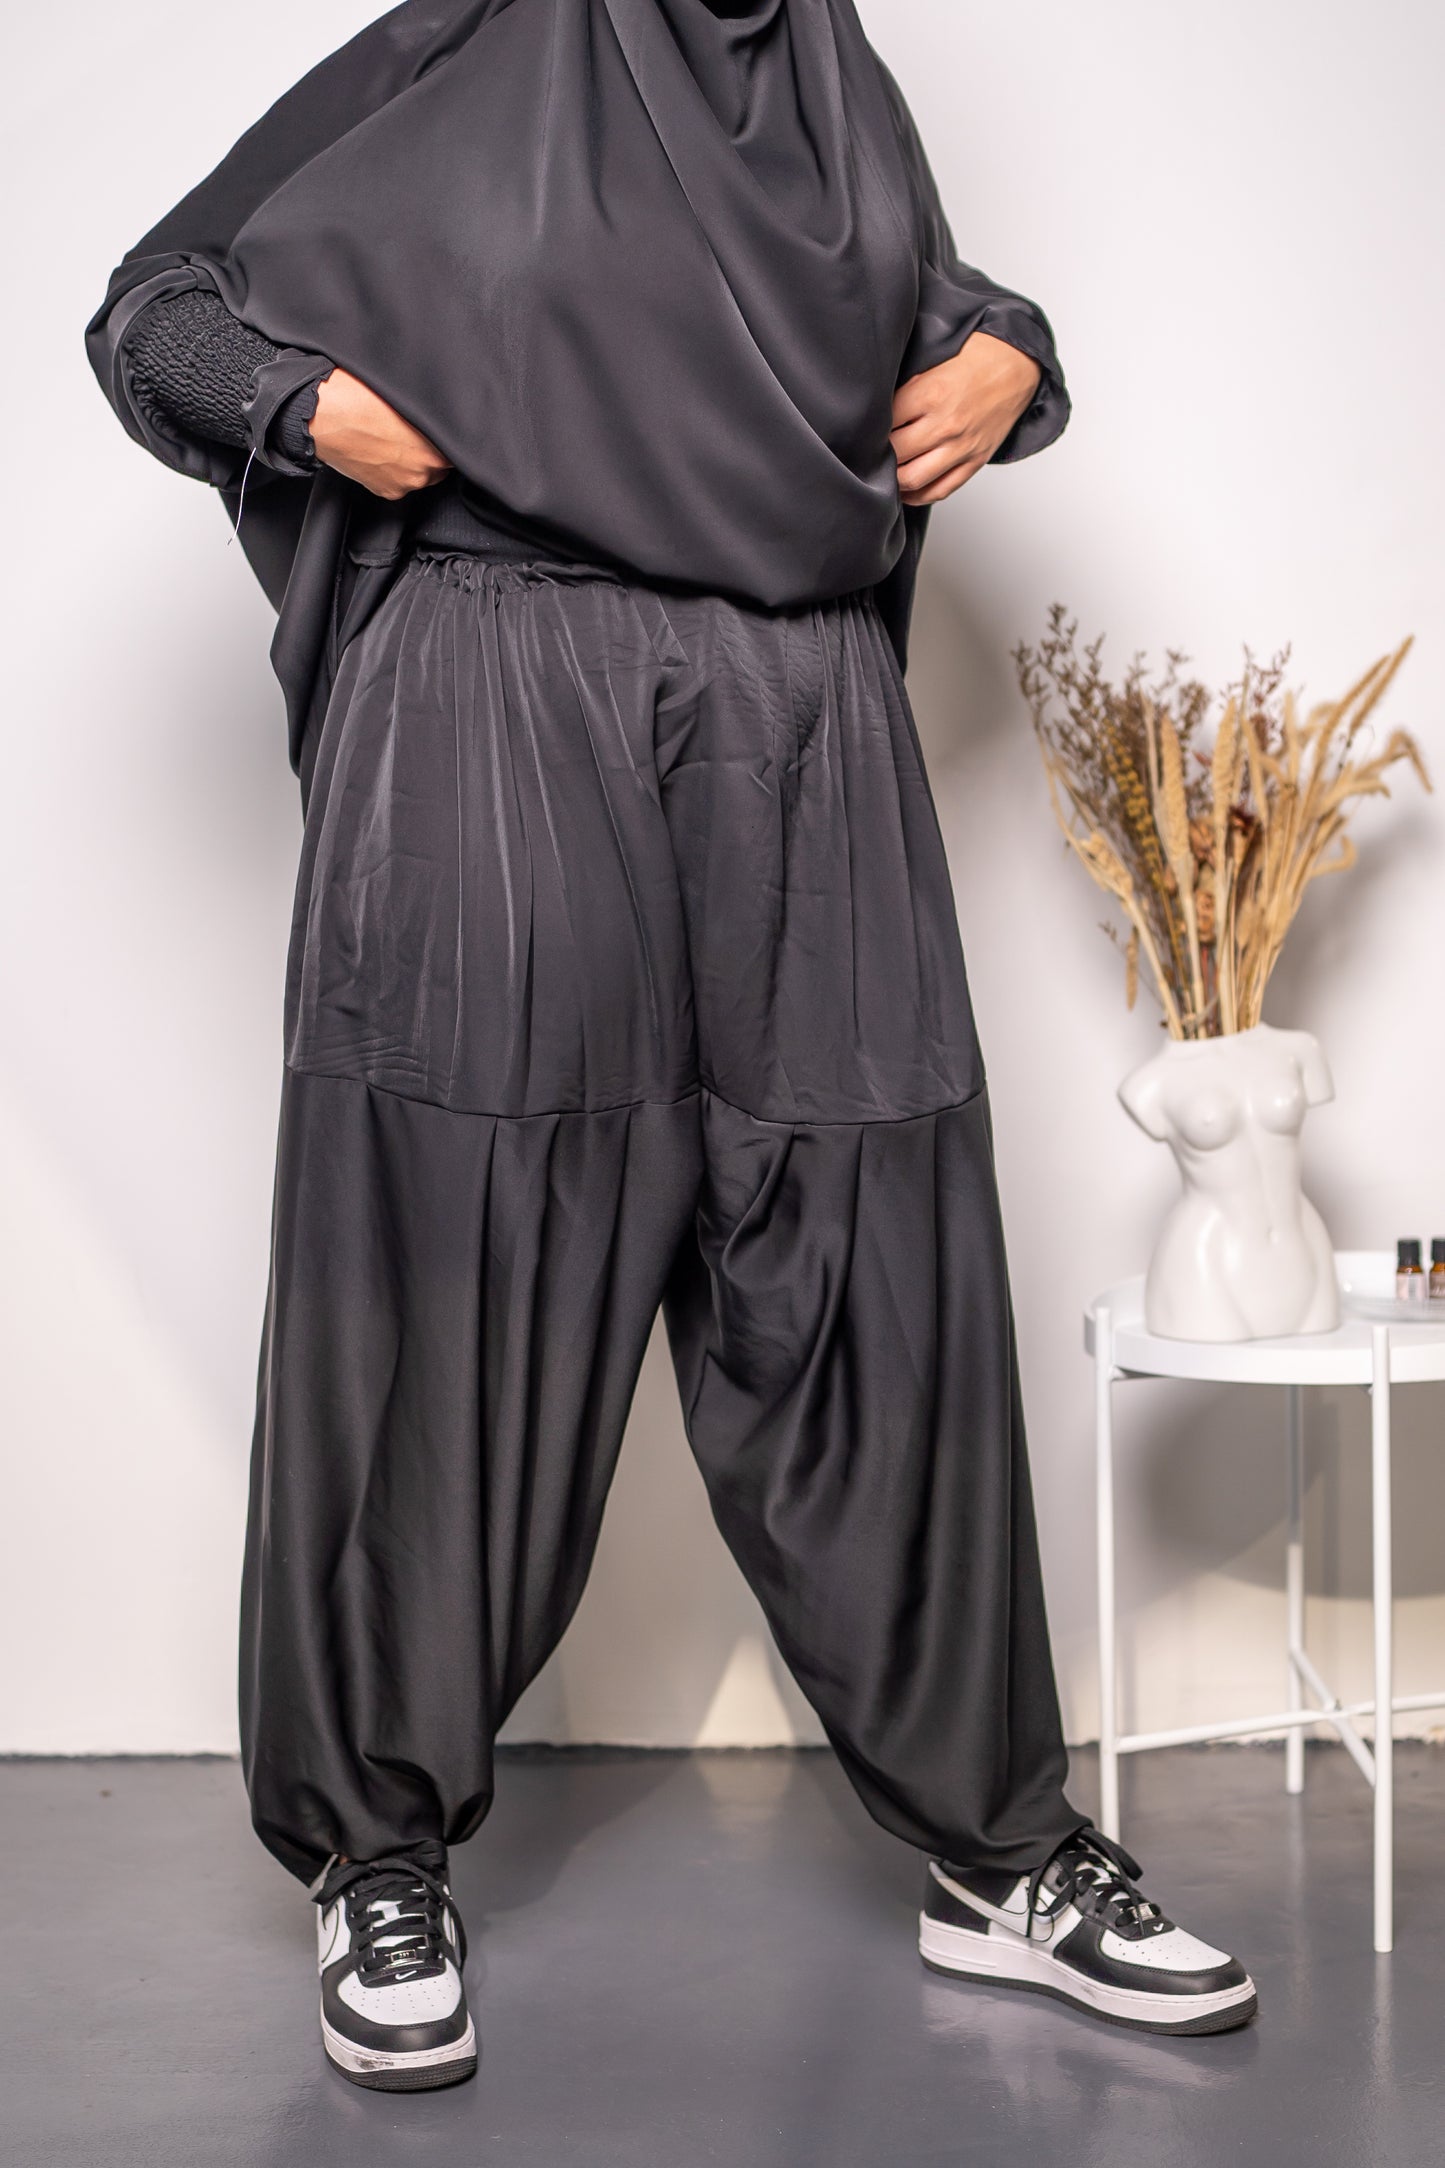 Jilbab pants set